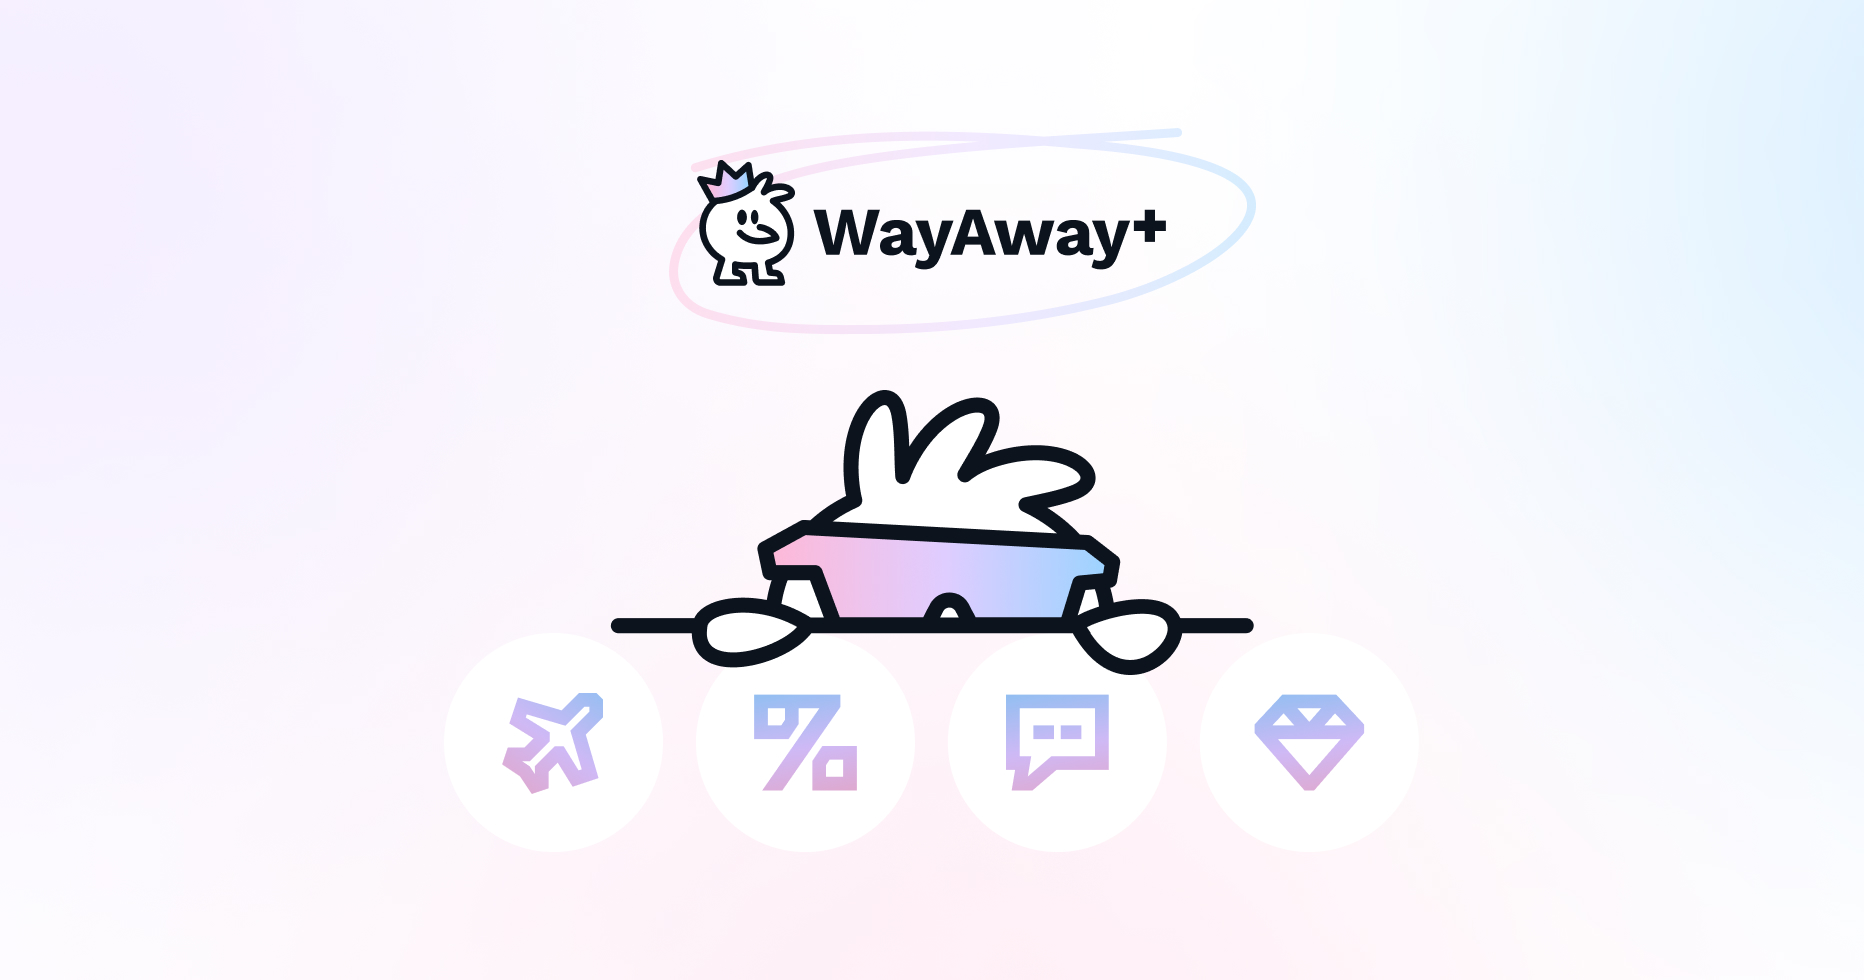 wayawayplus